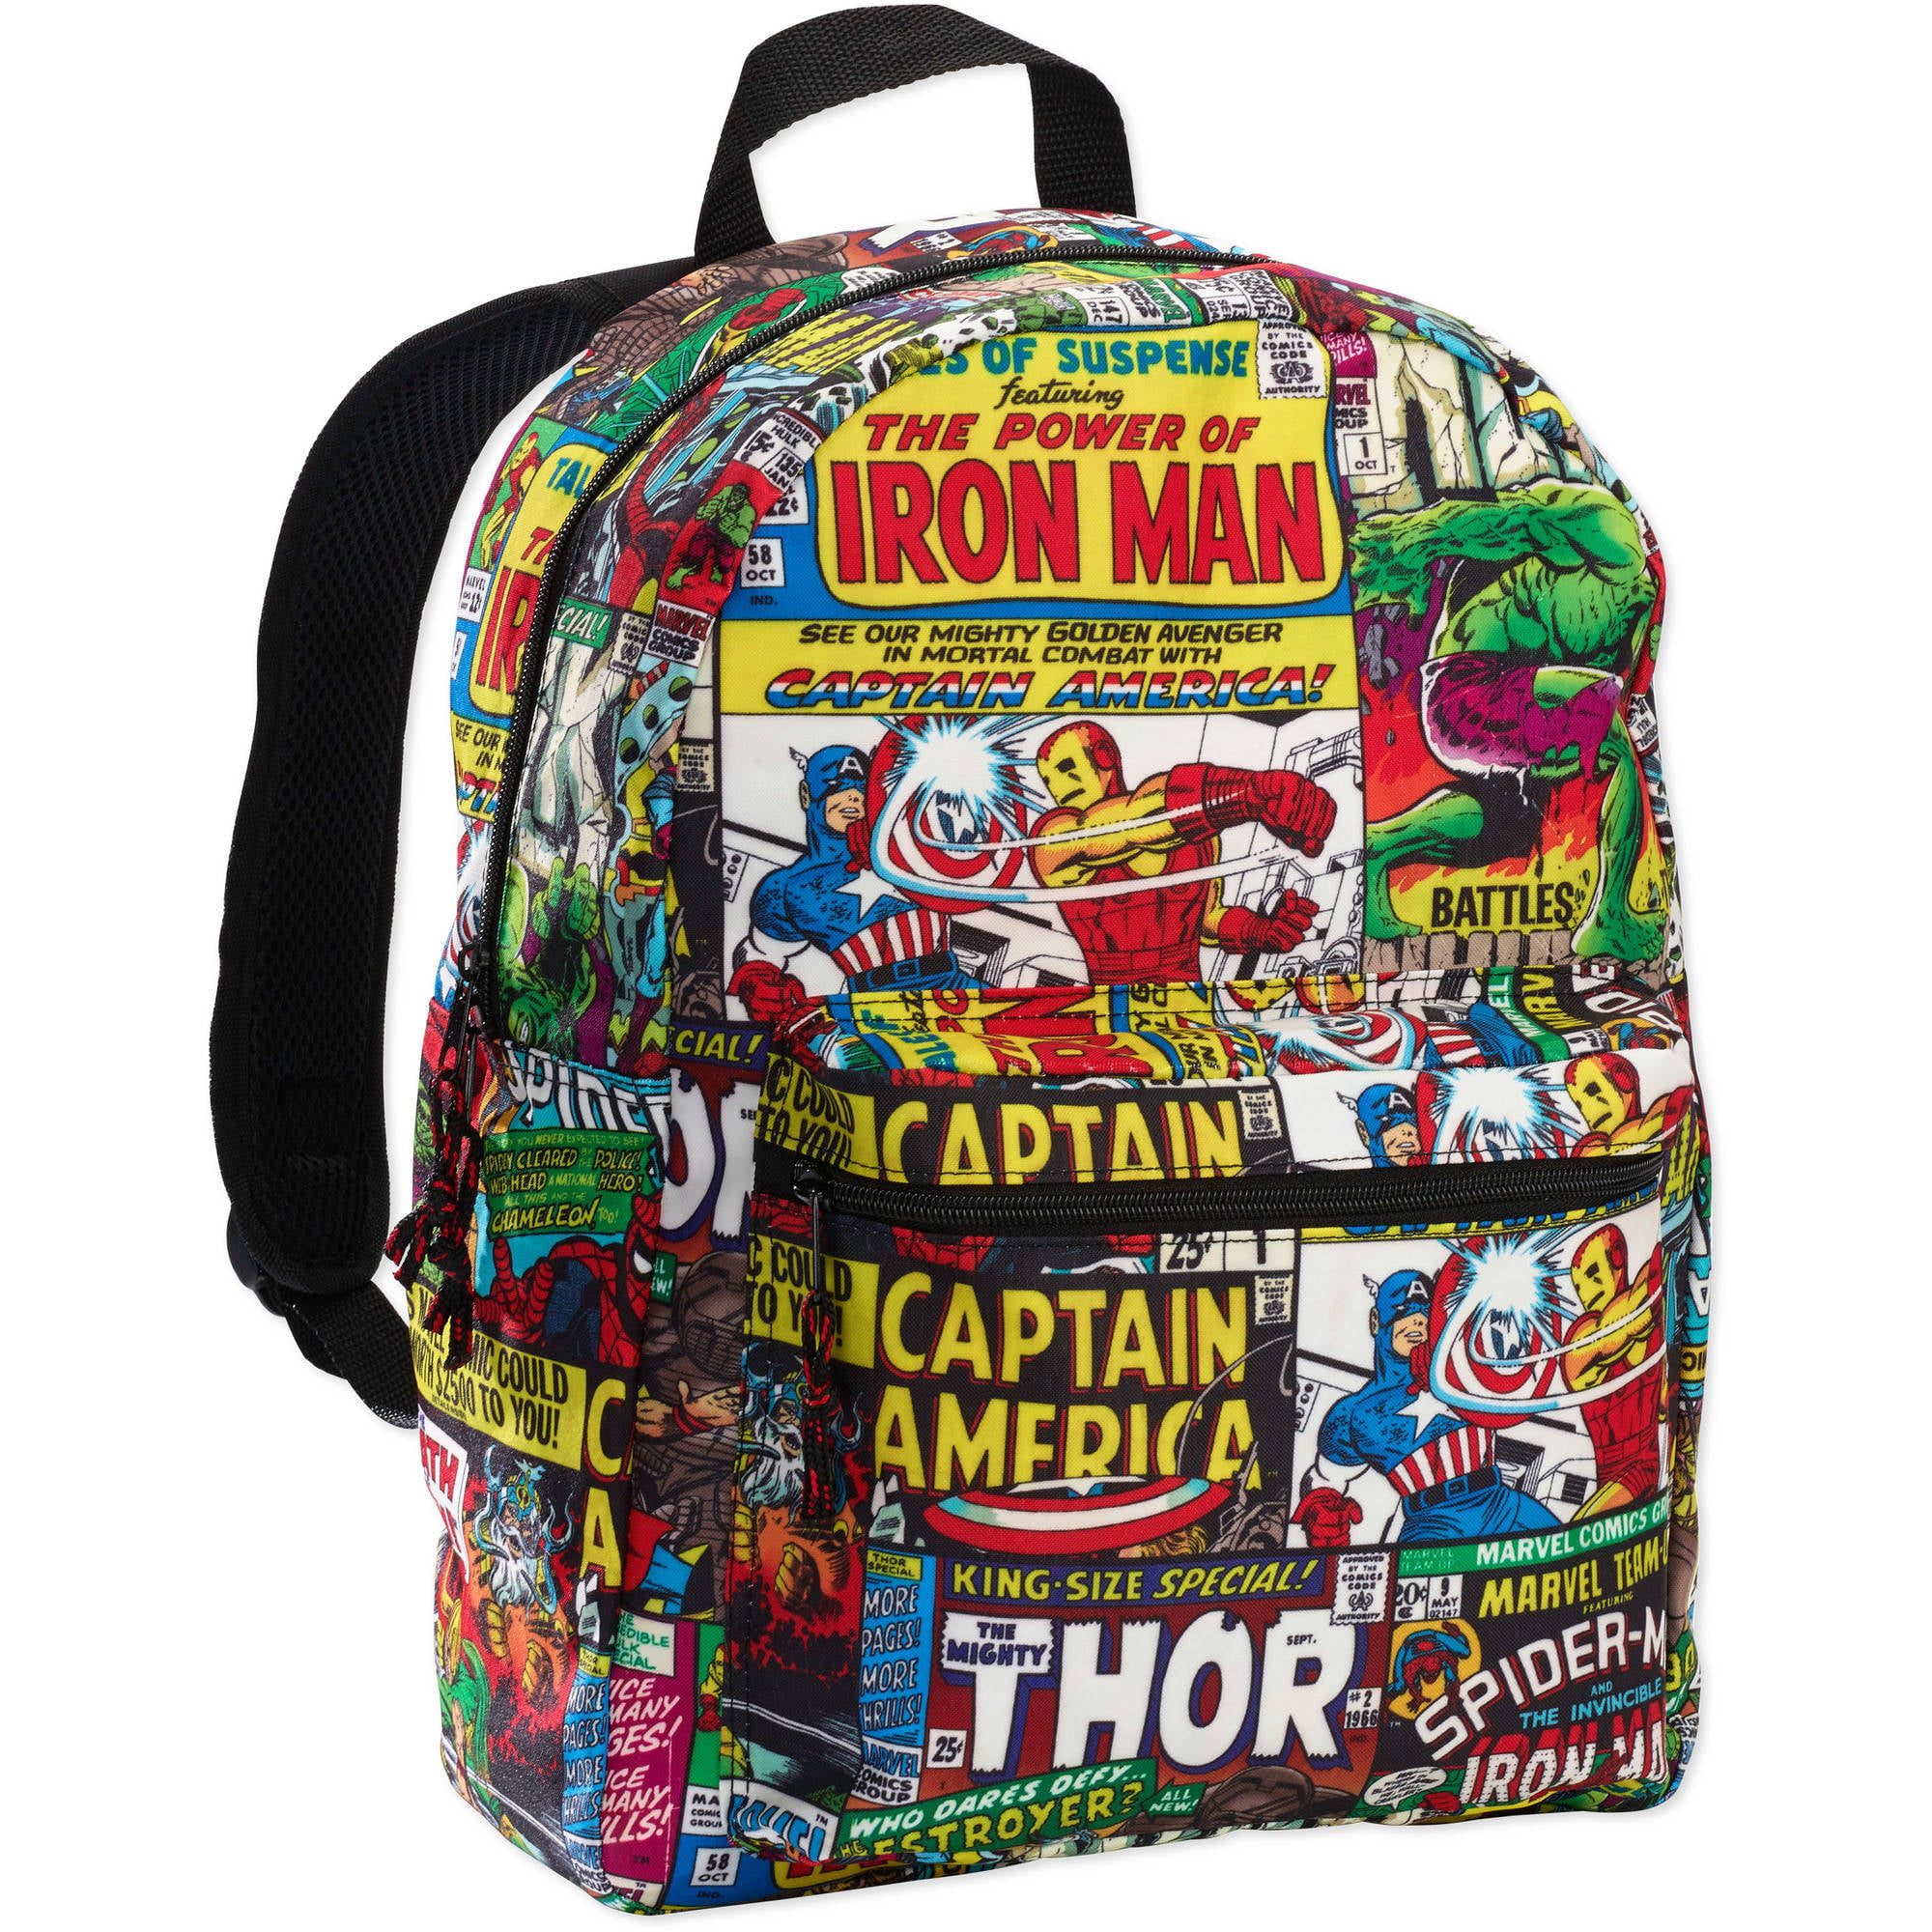 Marvel Backpack Marvel